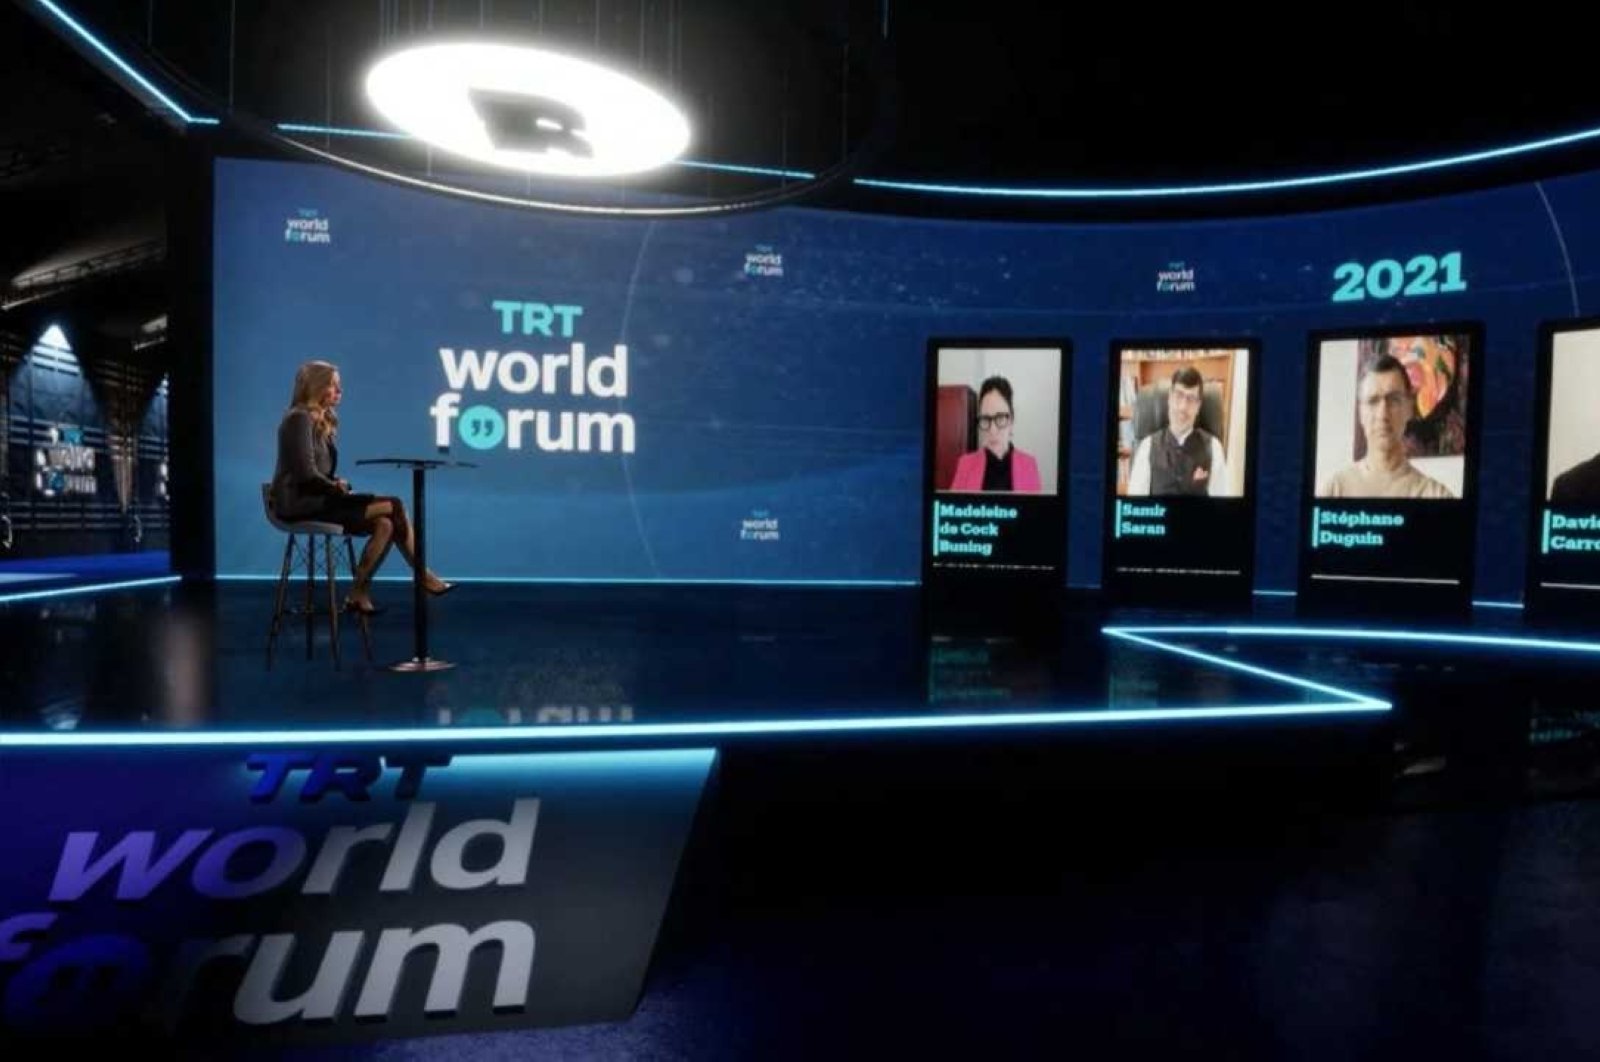 World forum 2021. Forum 2021